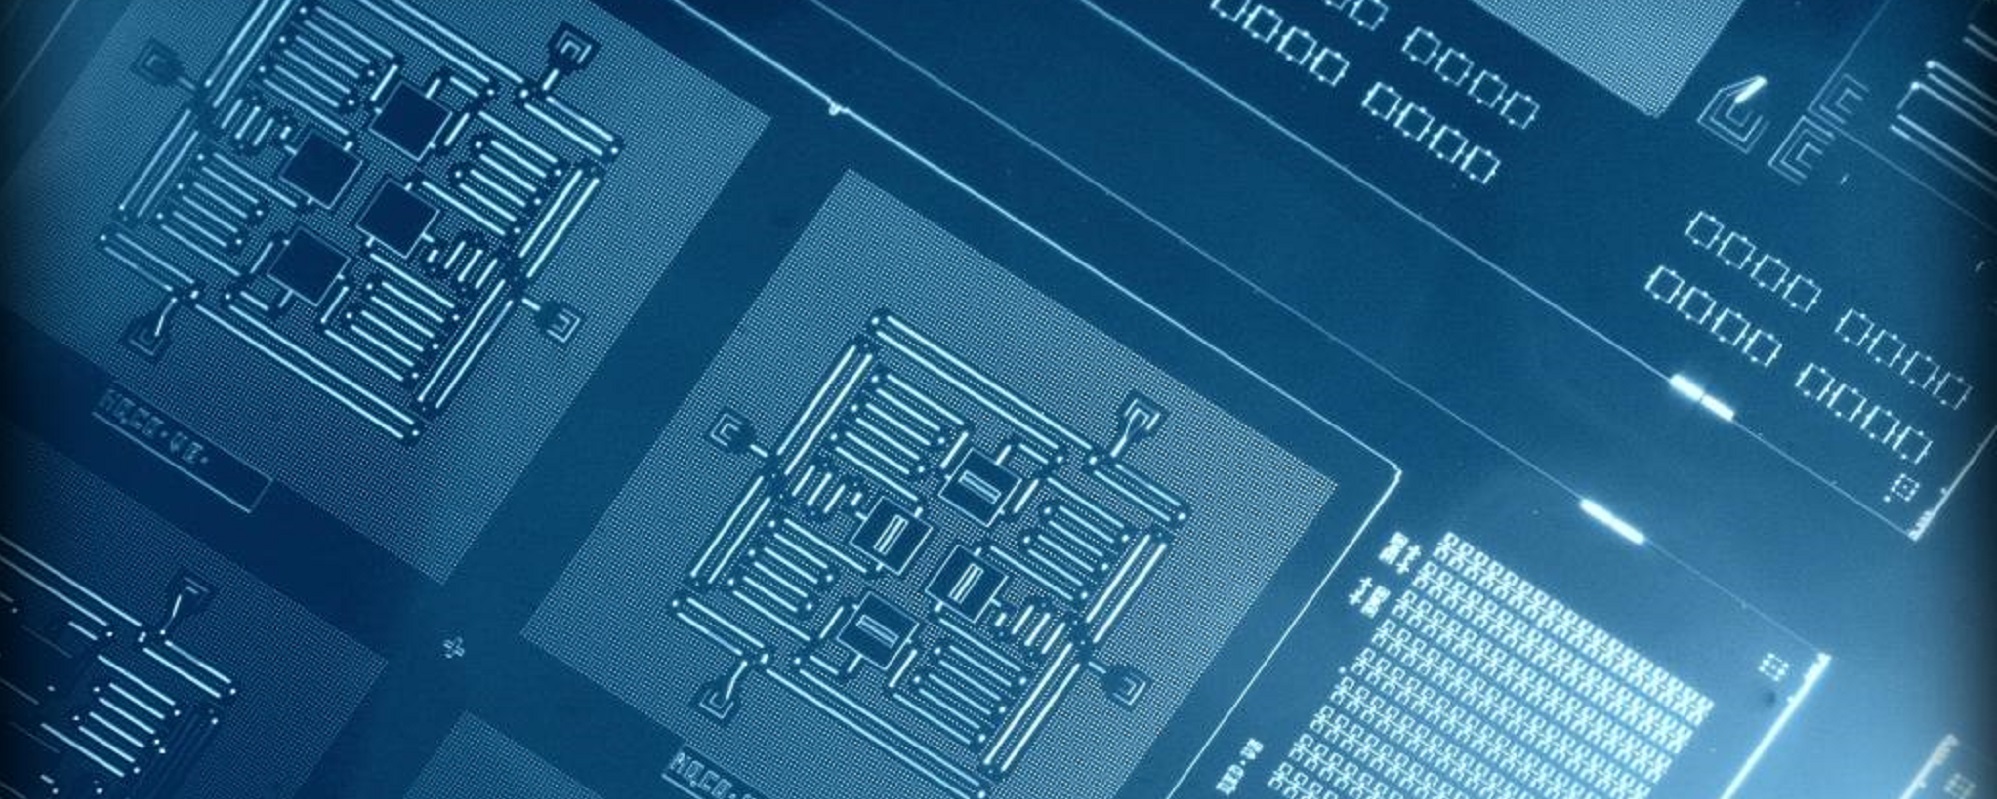 Qubits in IBM's quantum computer.